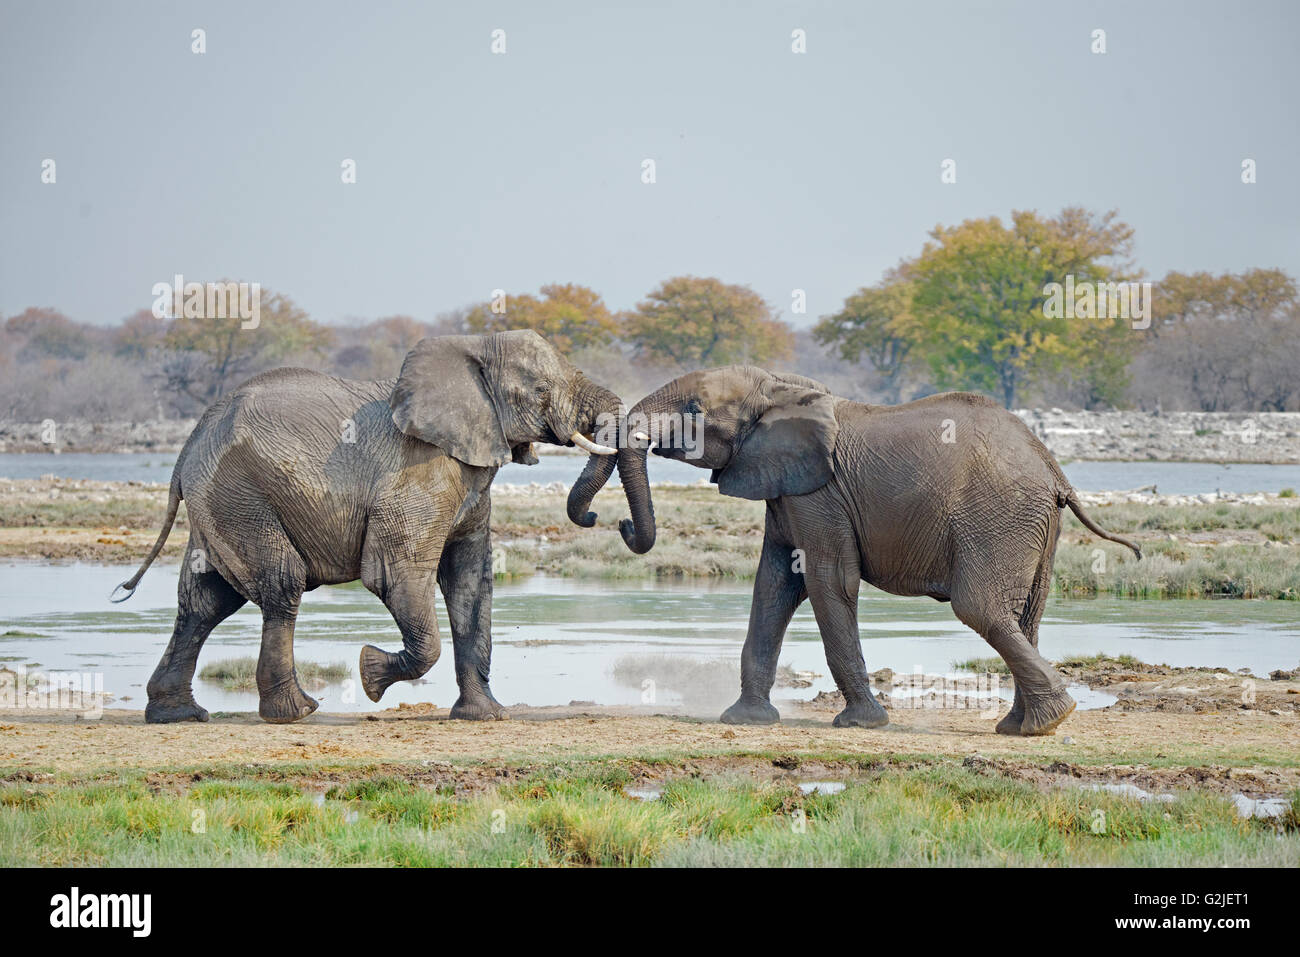 Los menores el elefante africano (Loxodonta africana) jugando, el Parque Nacional de Etosha, Namibia, Africa del Sur Foto de stock